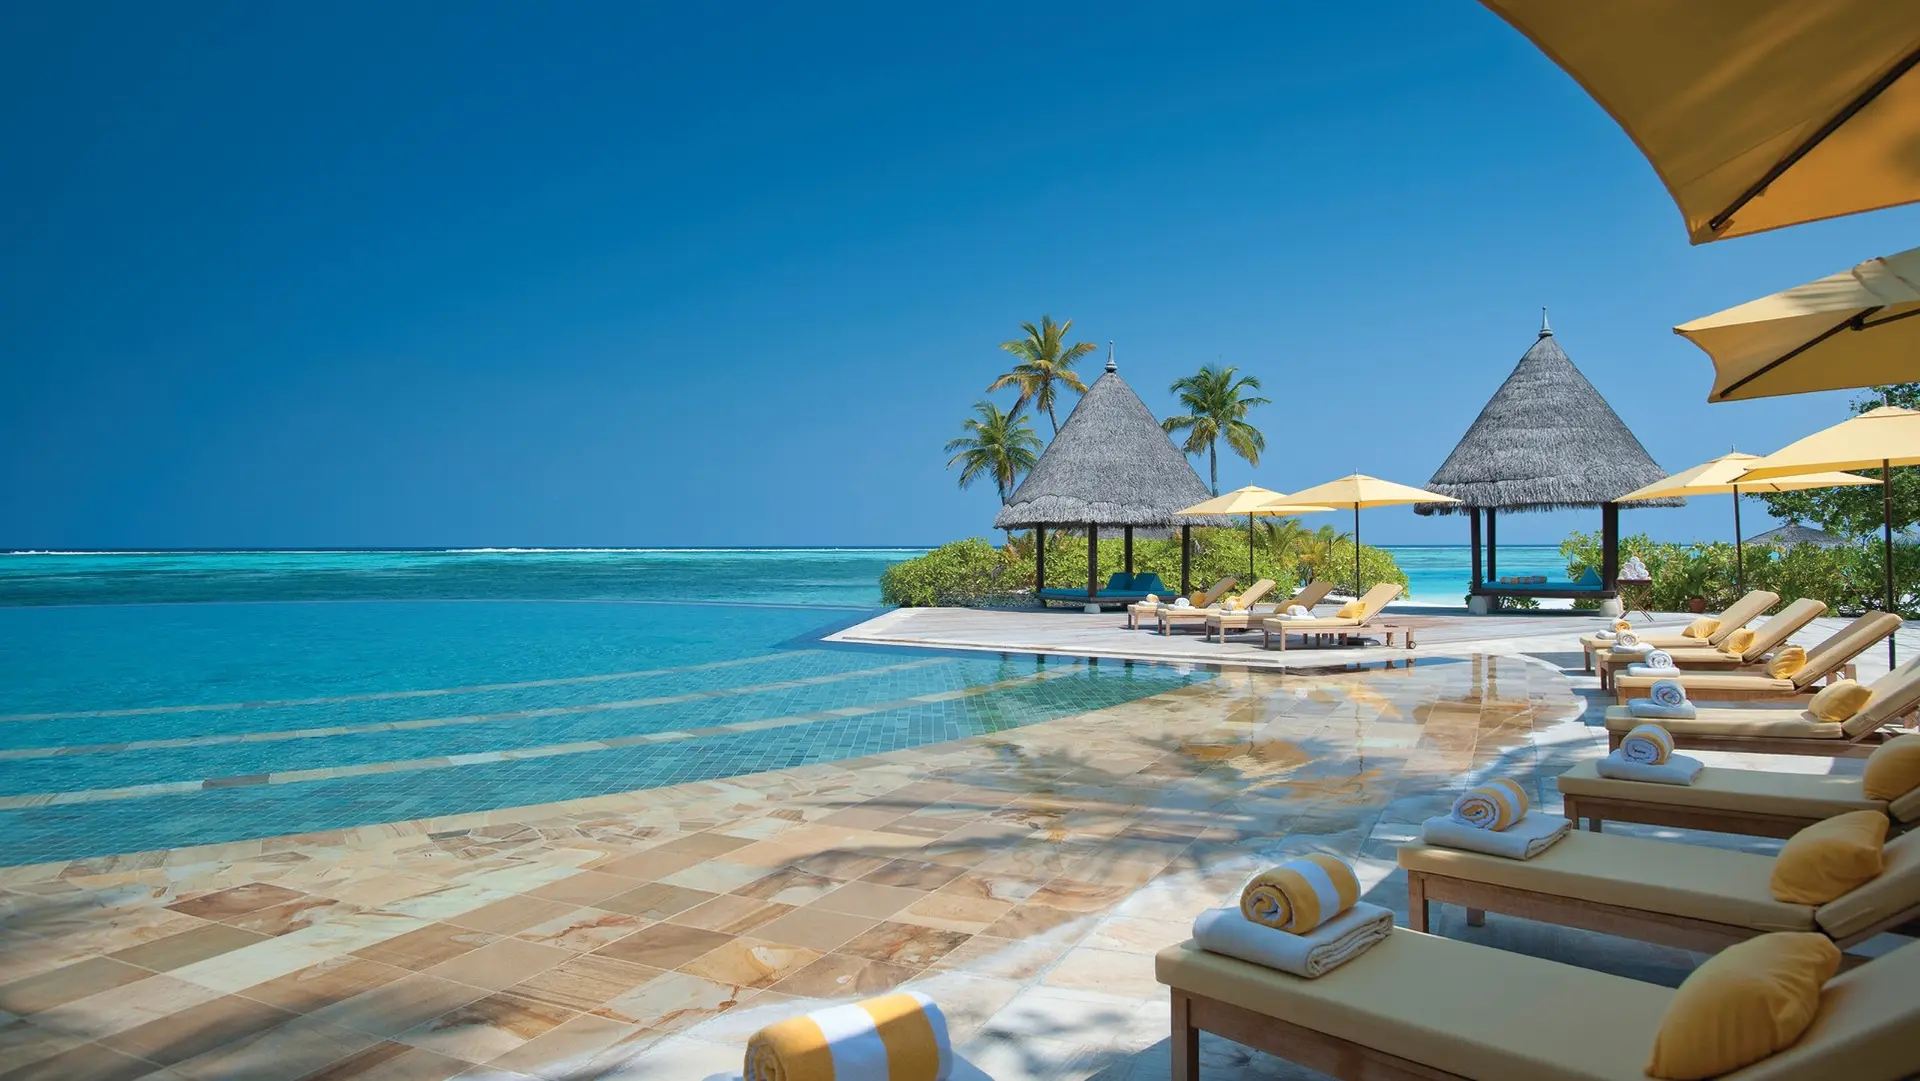 Hotel review Service & Facilities' - Four Seasons Resort Maldives at Kuda Huraa - 1